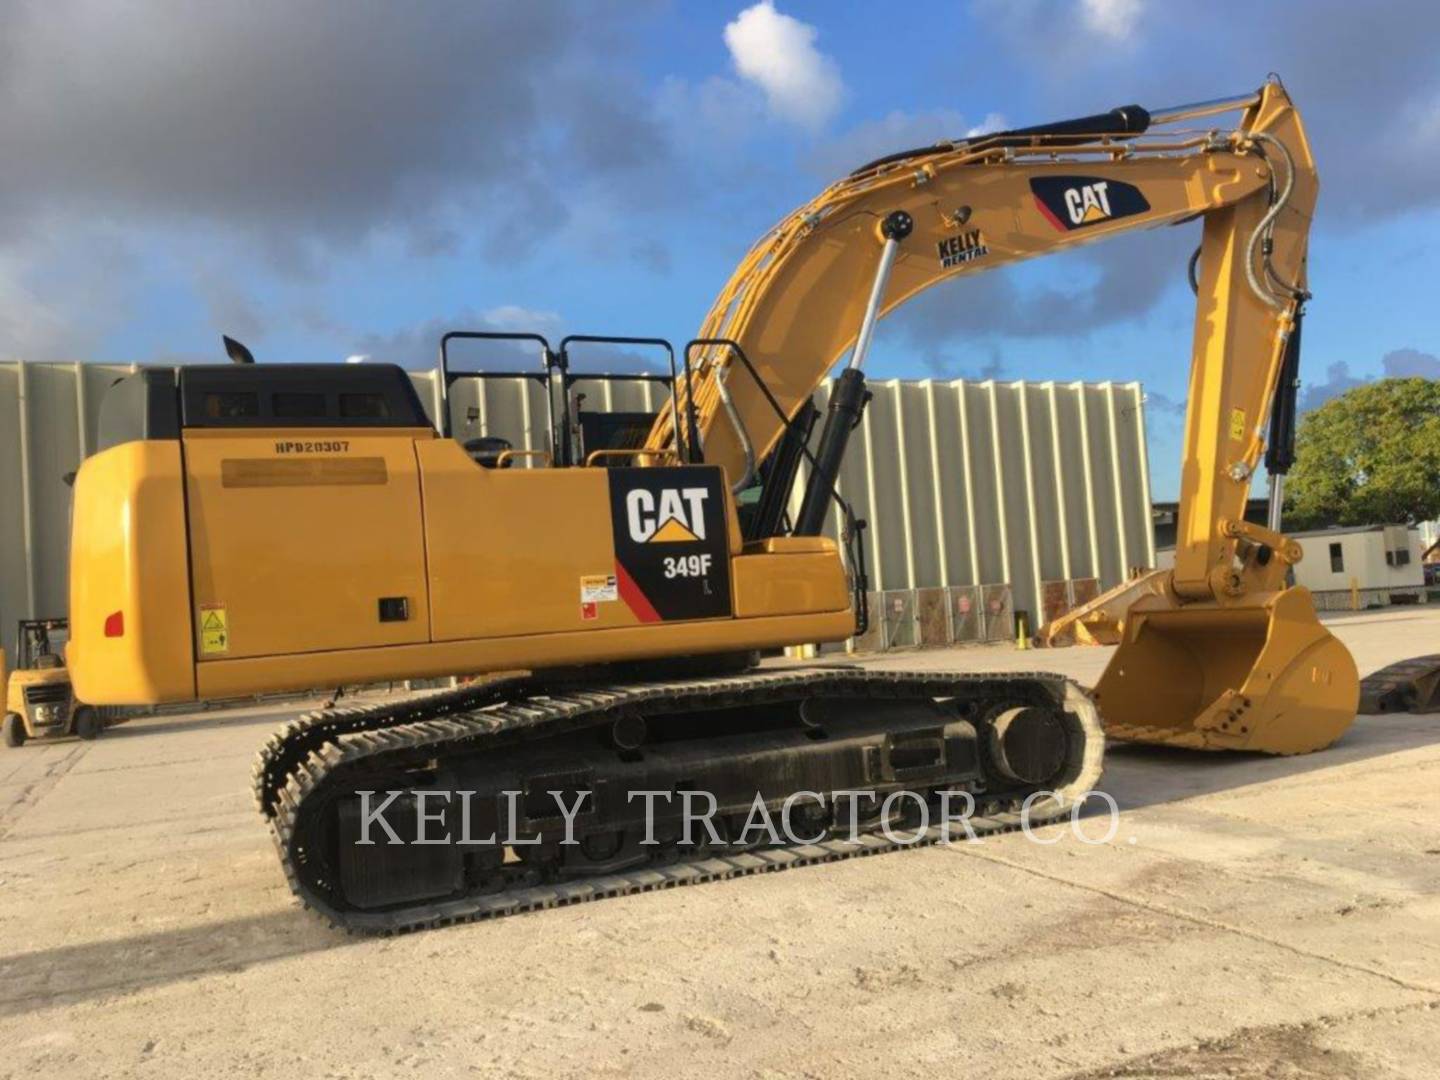 18 Caterpillar 349 F L Reach Fix U C Excavator For Sale In Miami Fd Ironsearch